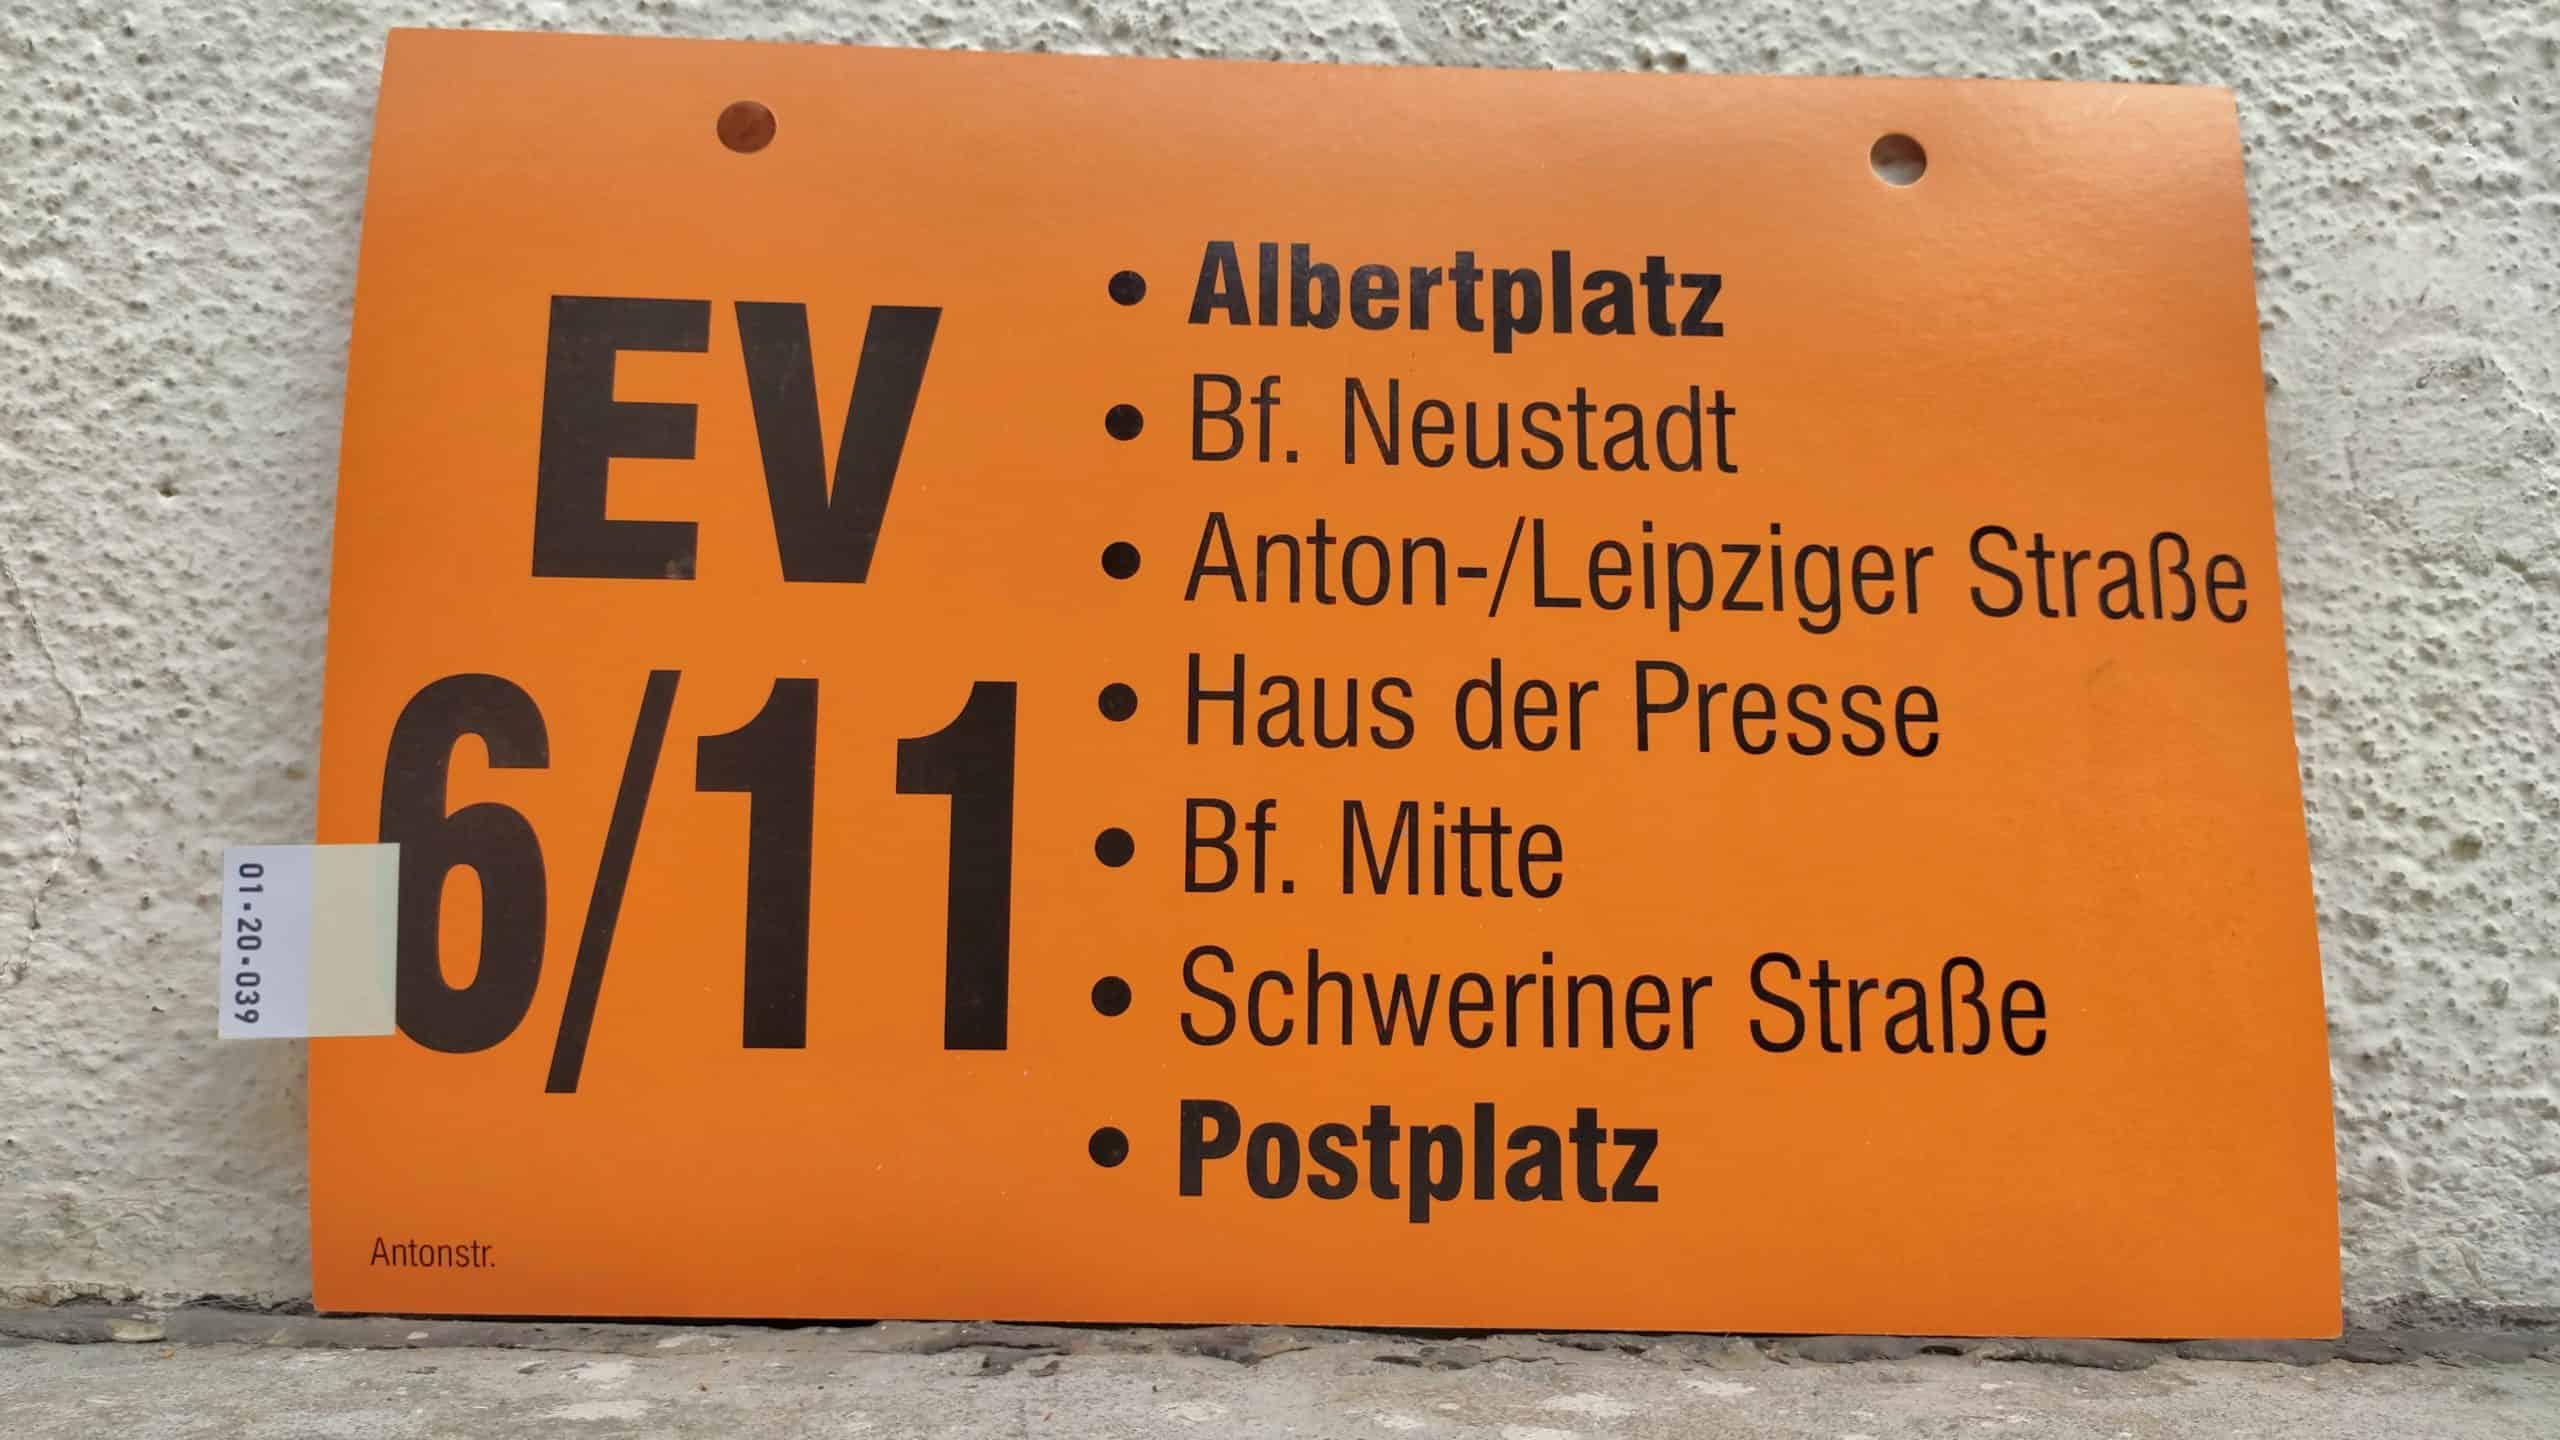 EV 6/11 Albertplatz – Postplatz